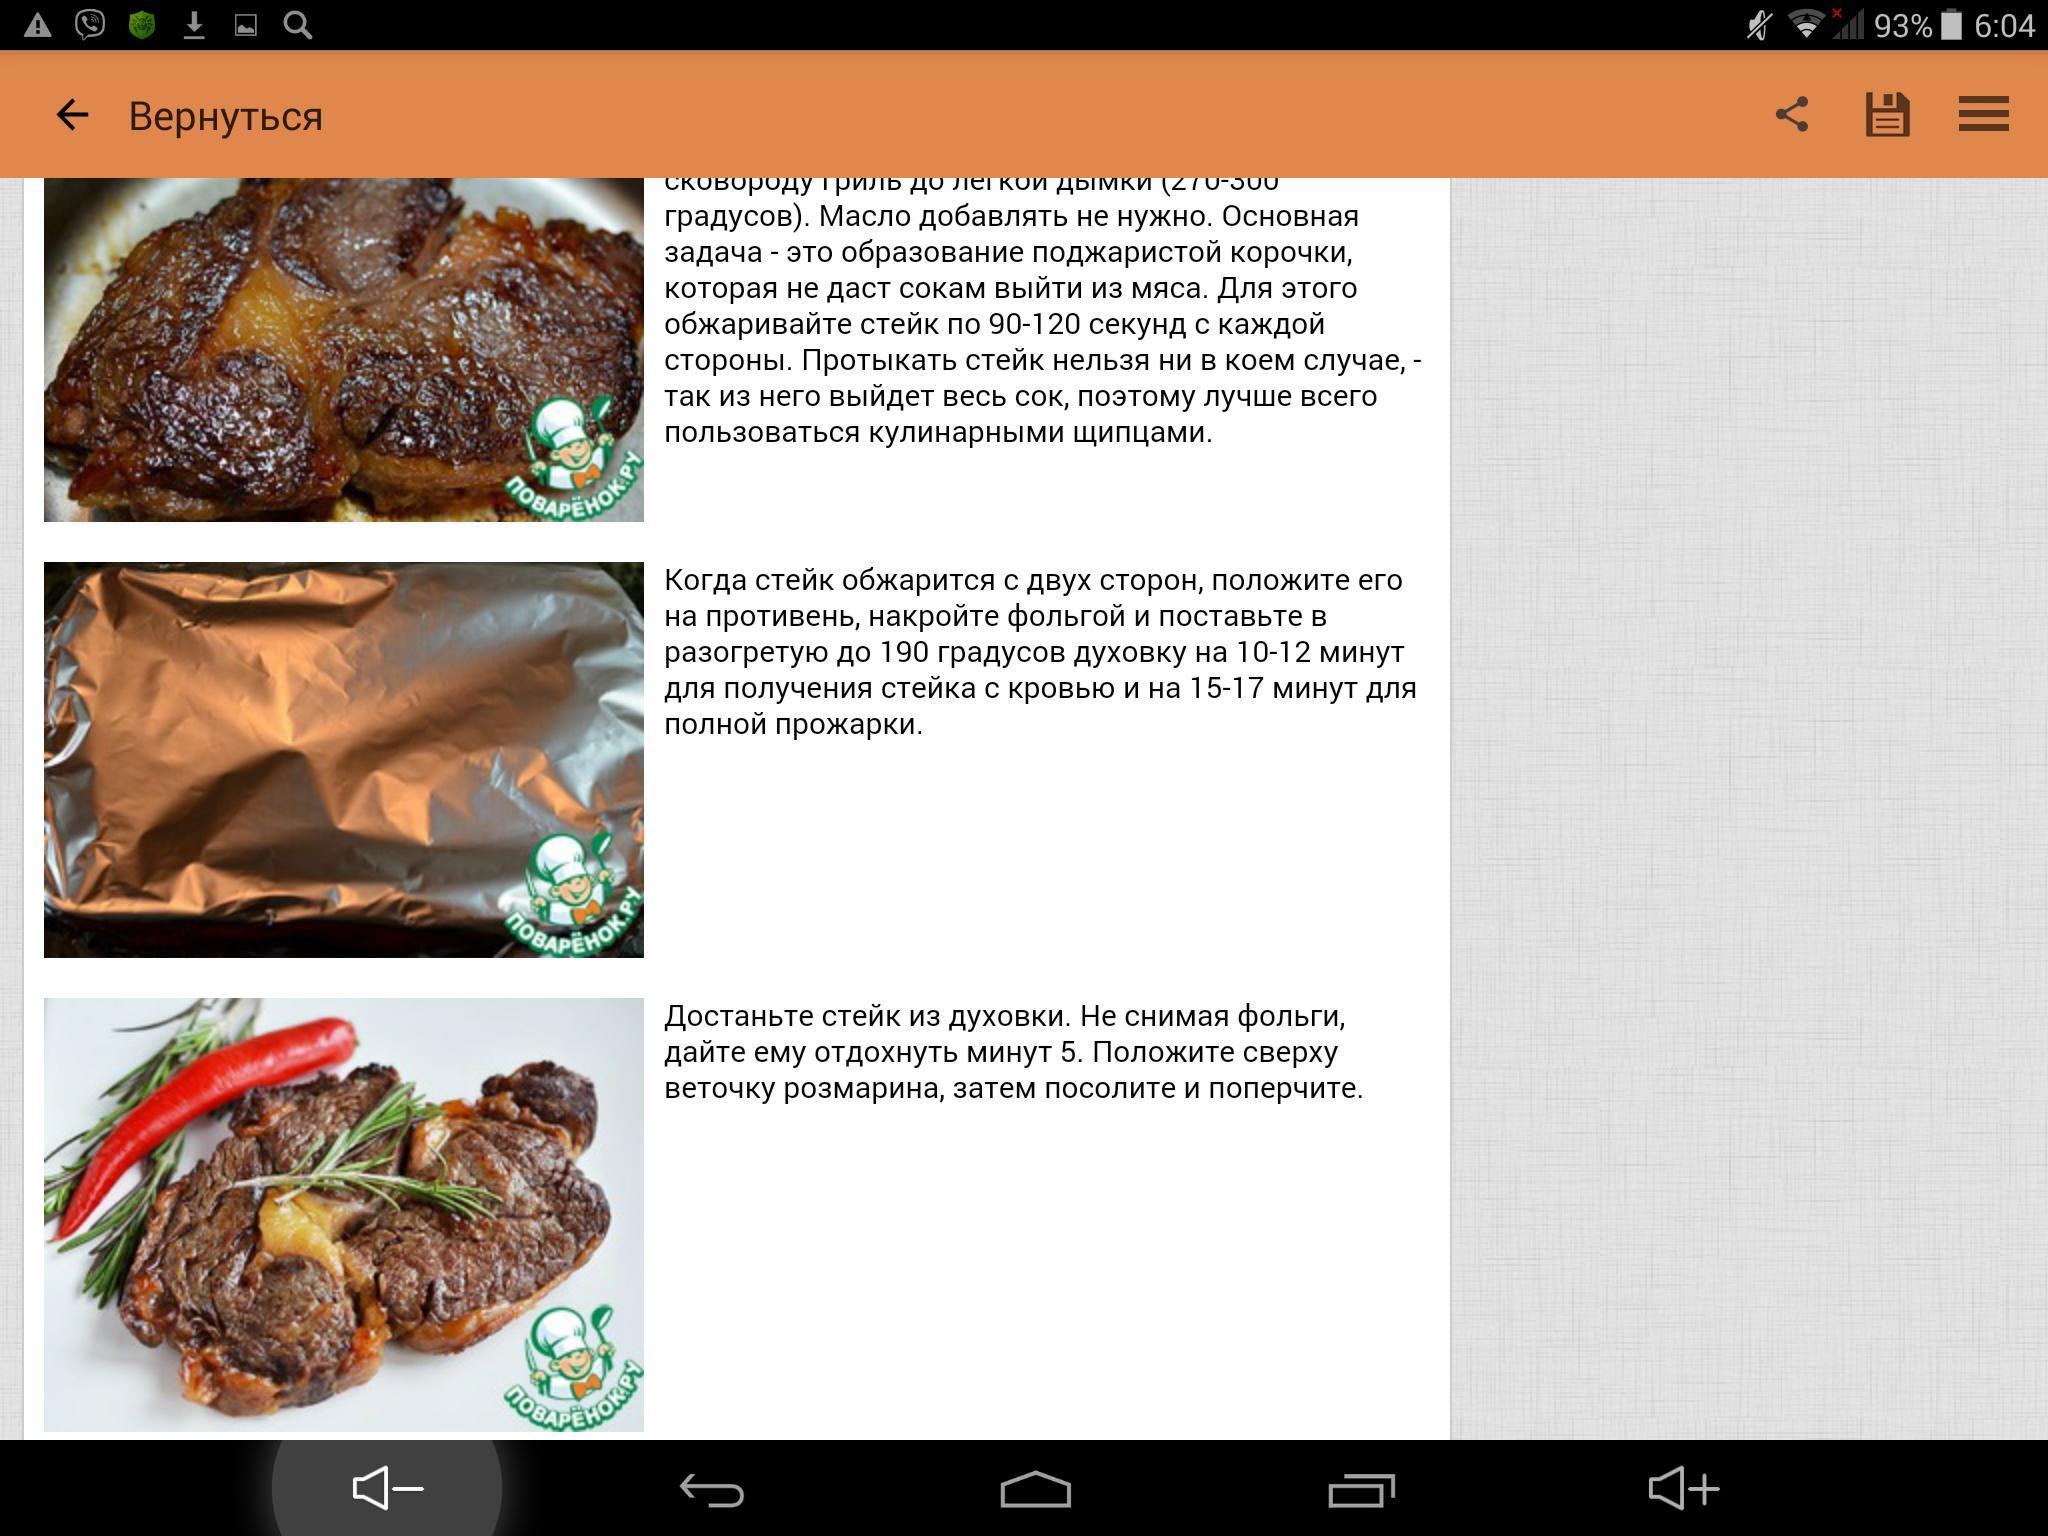 Тест на мясо ответы. Покажи стейк медальон и калькуляция. Dysmantle Android рецепты пищи.